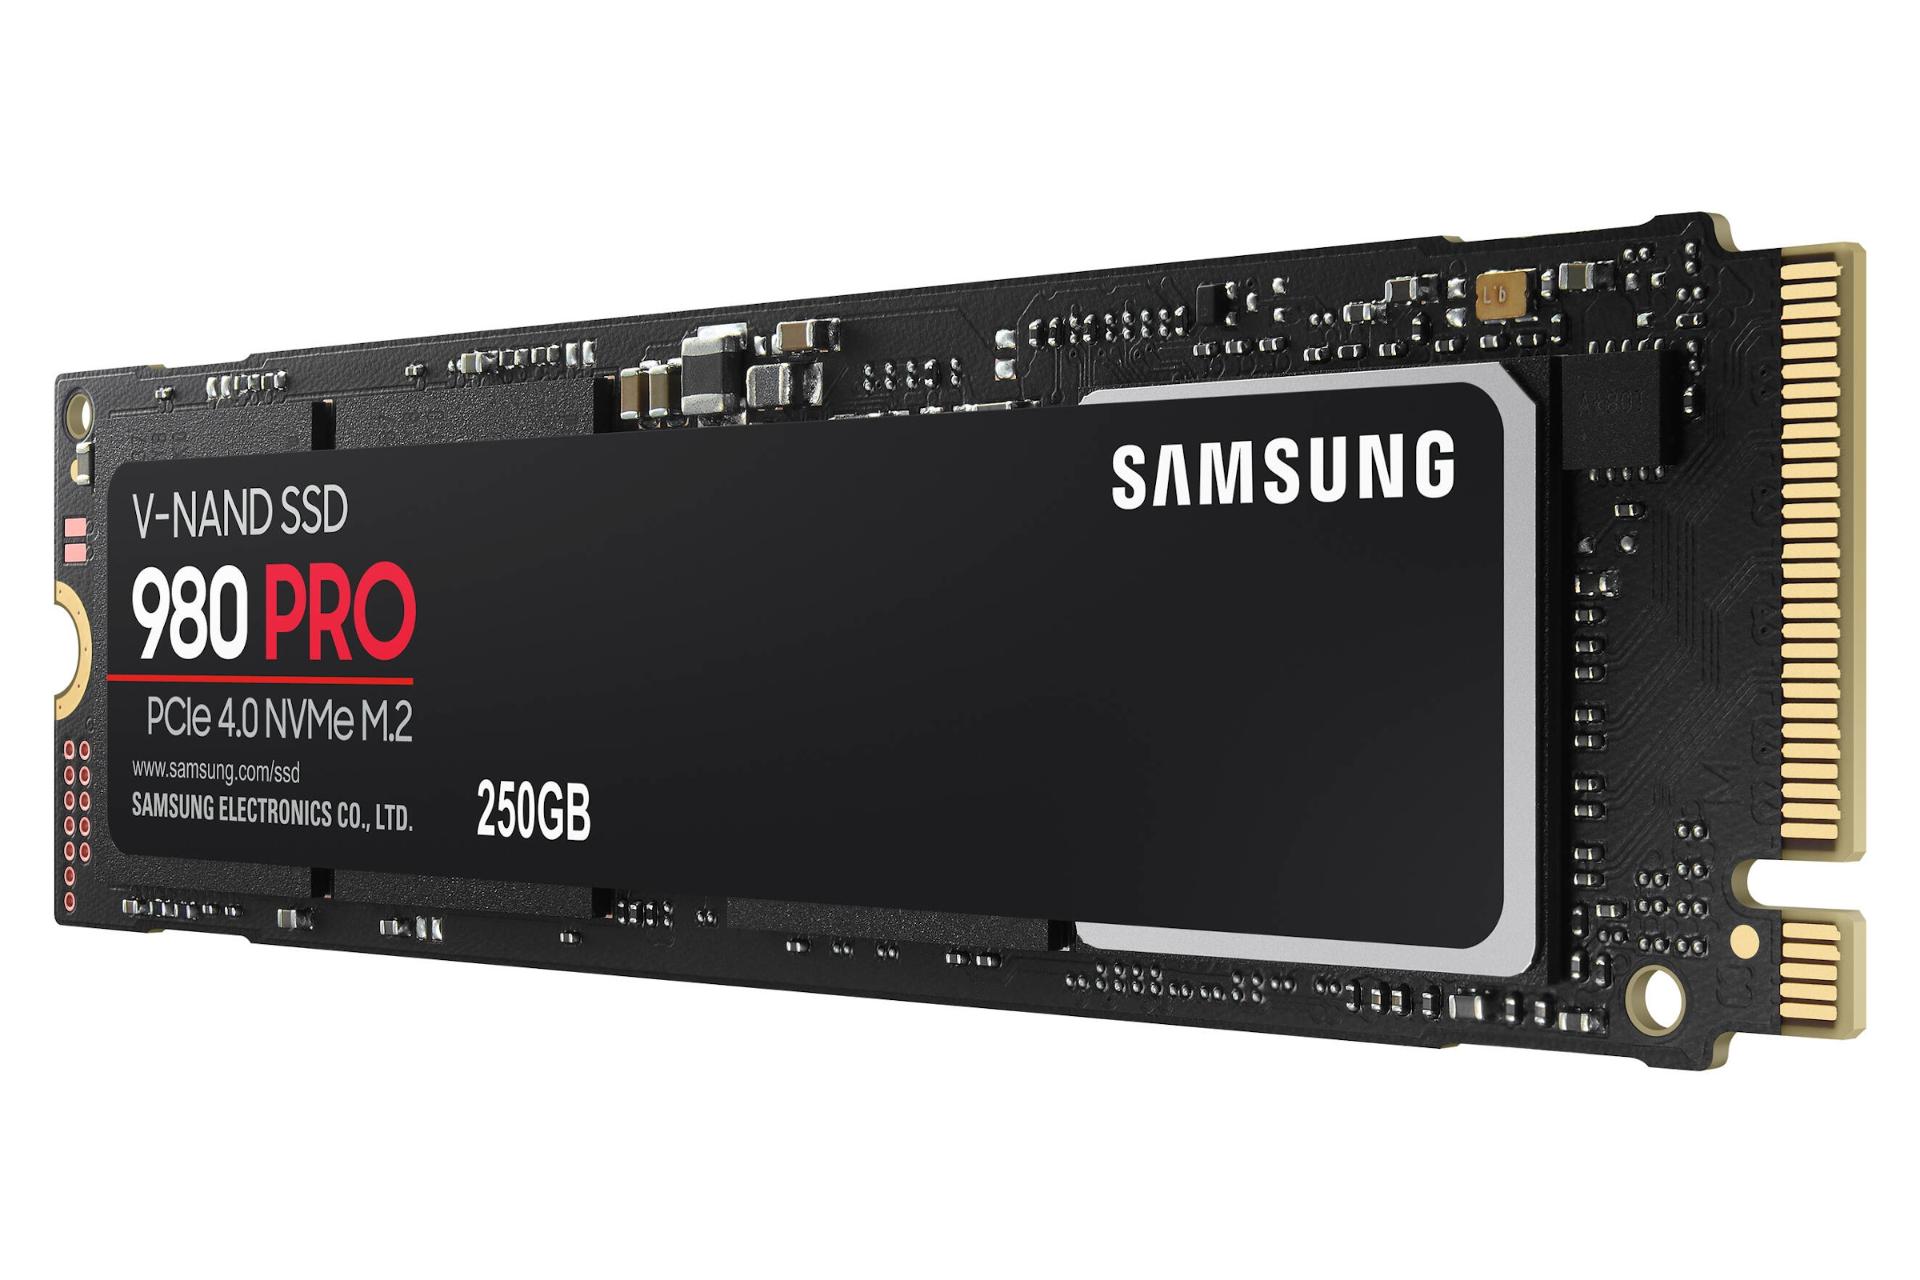 مرجع متخصصين ايران نماي راست SSD سامسونگ 980 پرو NVMe M.2 ظرفيت 250 گيگابايت Samsung 980 Pro